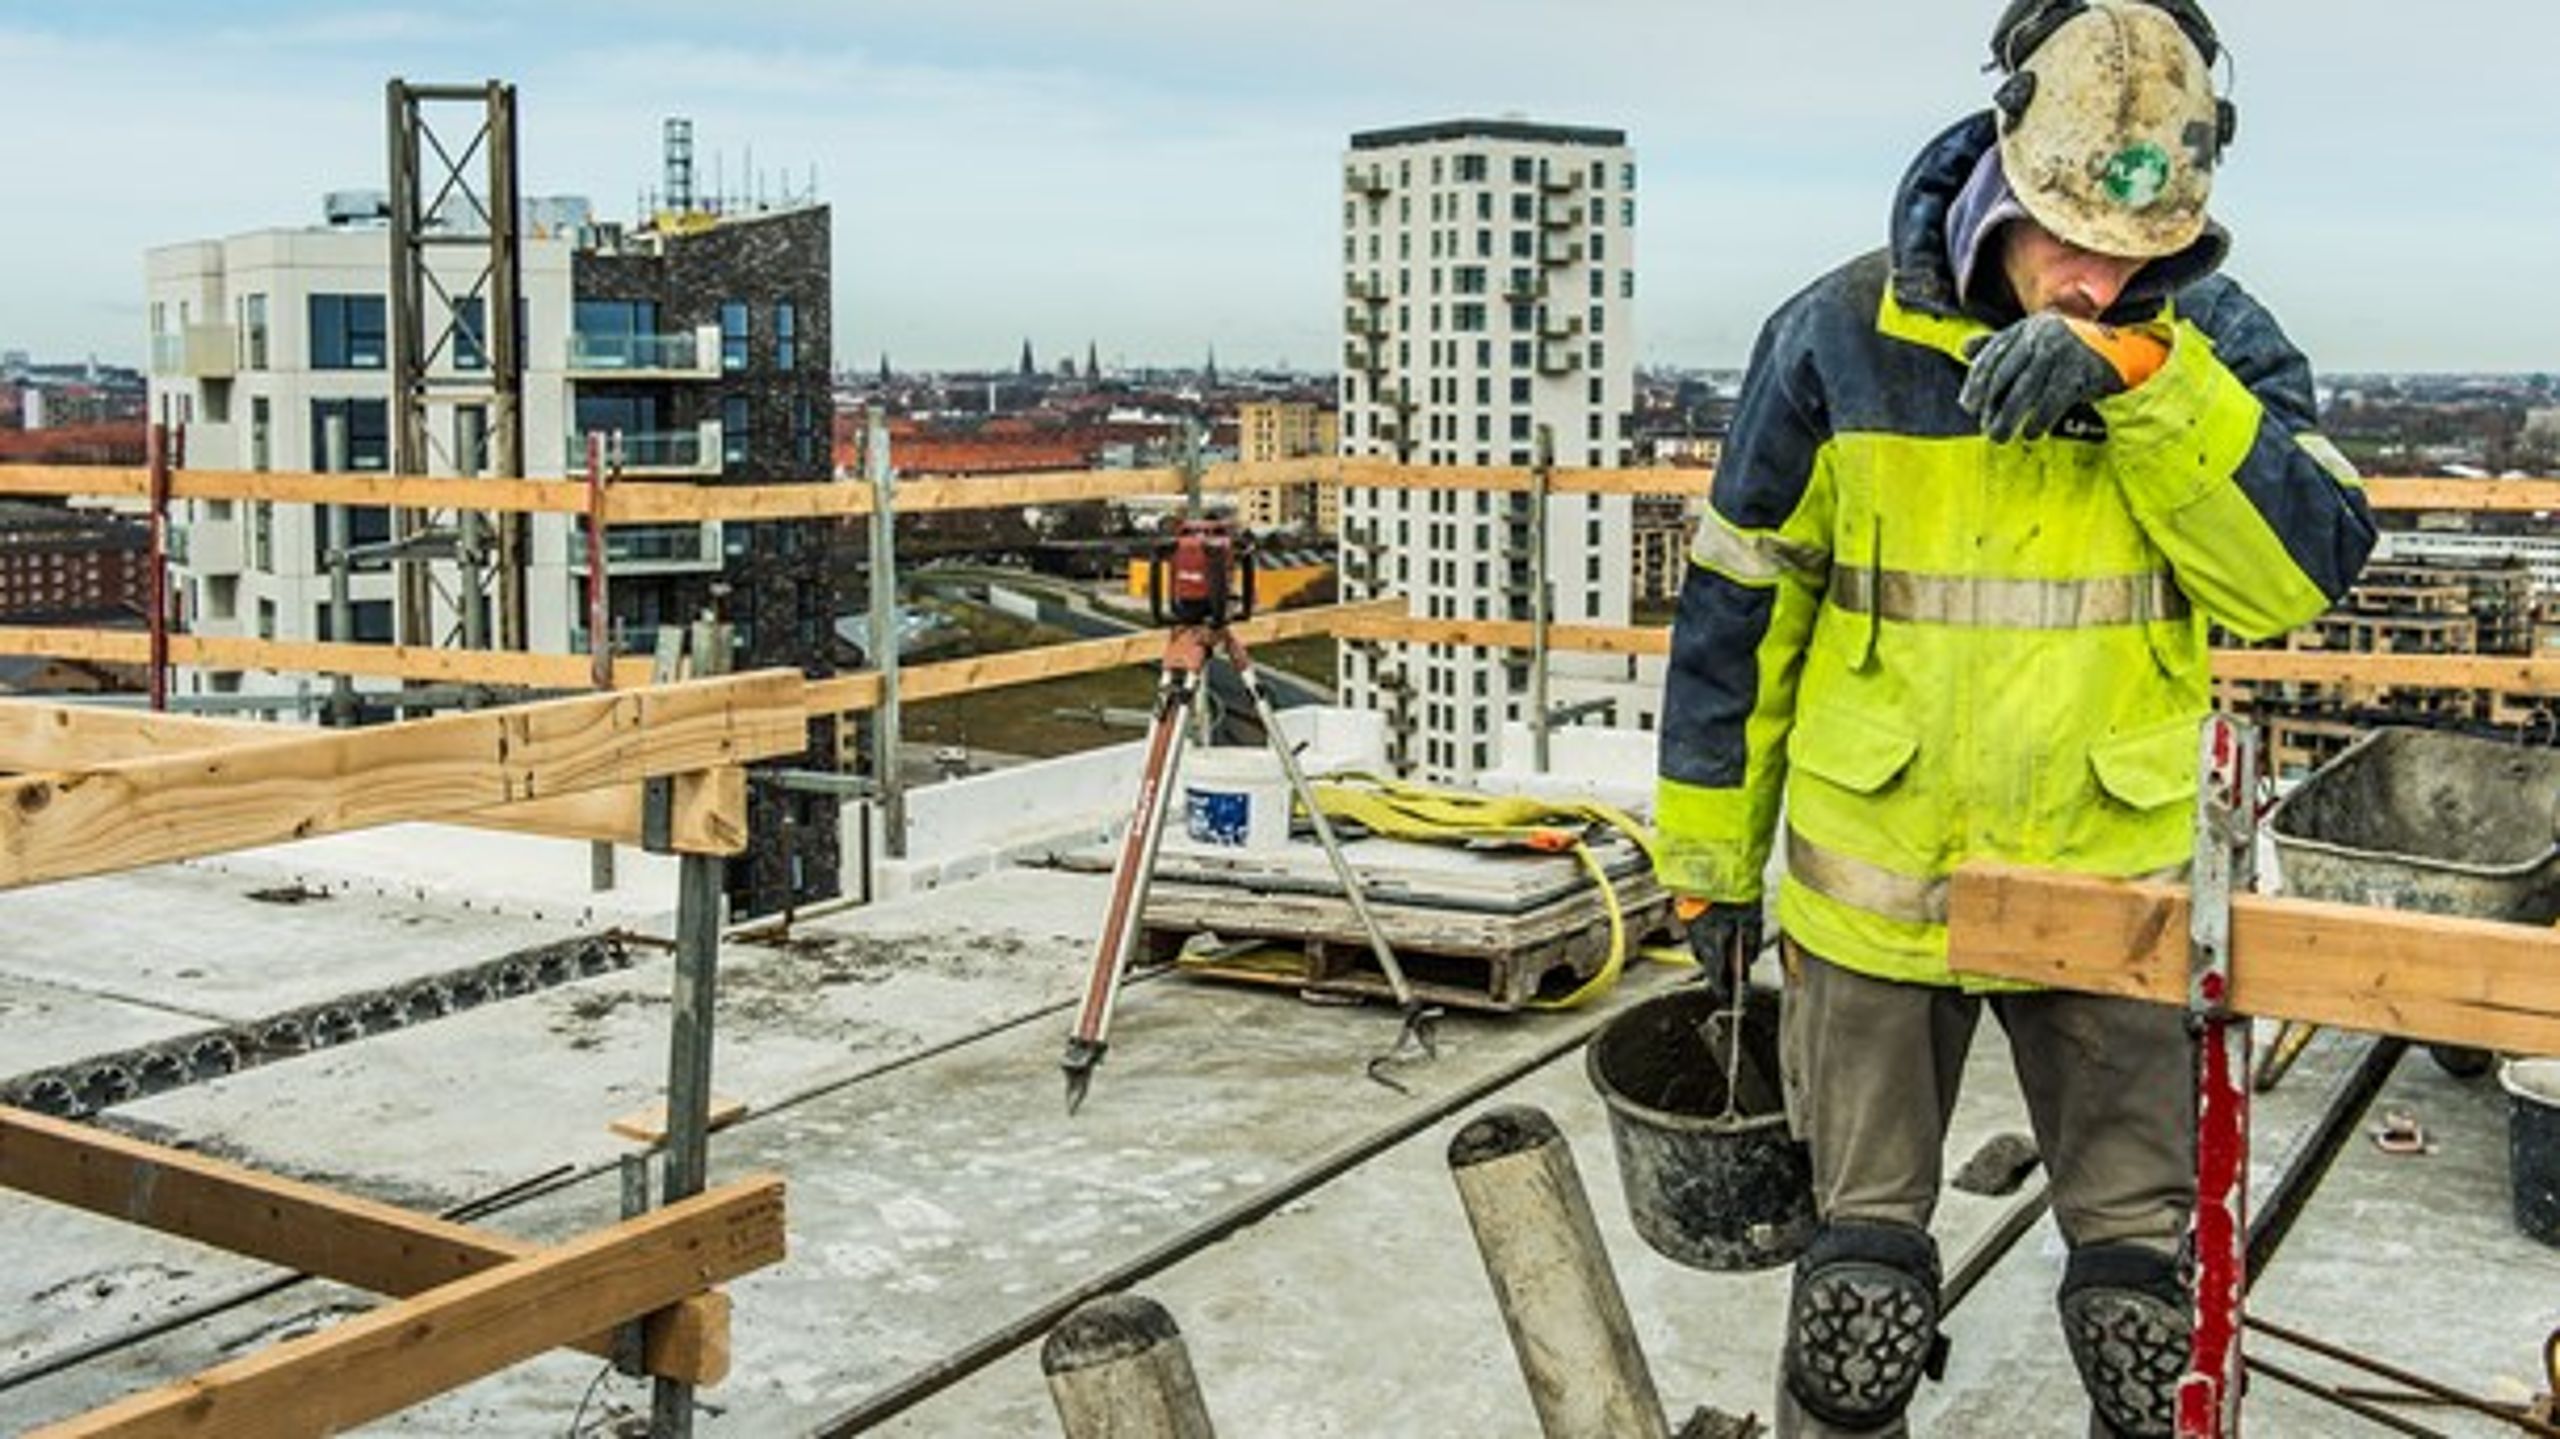 Mange byggearbejdere er blevet ledige på grund af coronakrisen. Derfor skal anlægsloftet suspenderes i 2021, så der kan sætte gang i beskæftigelsen, skriver byggeaktører.